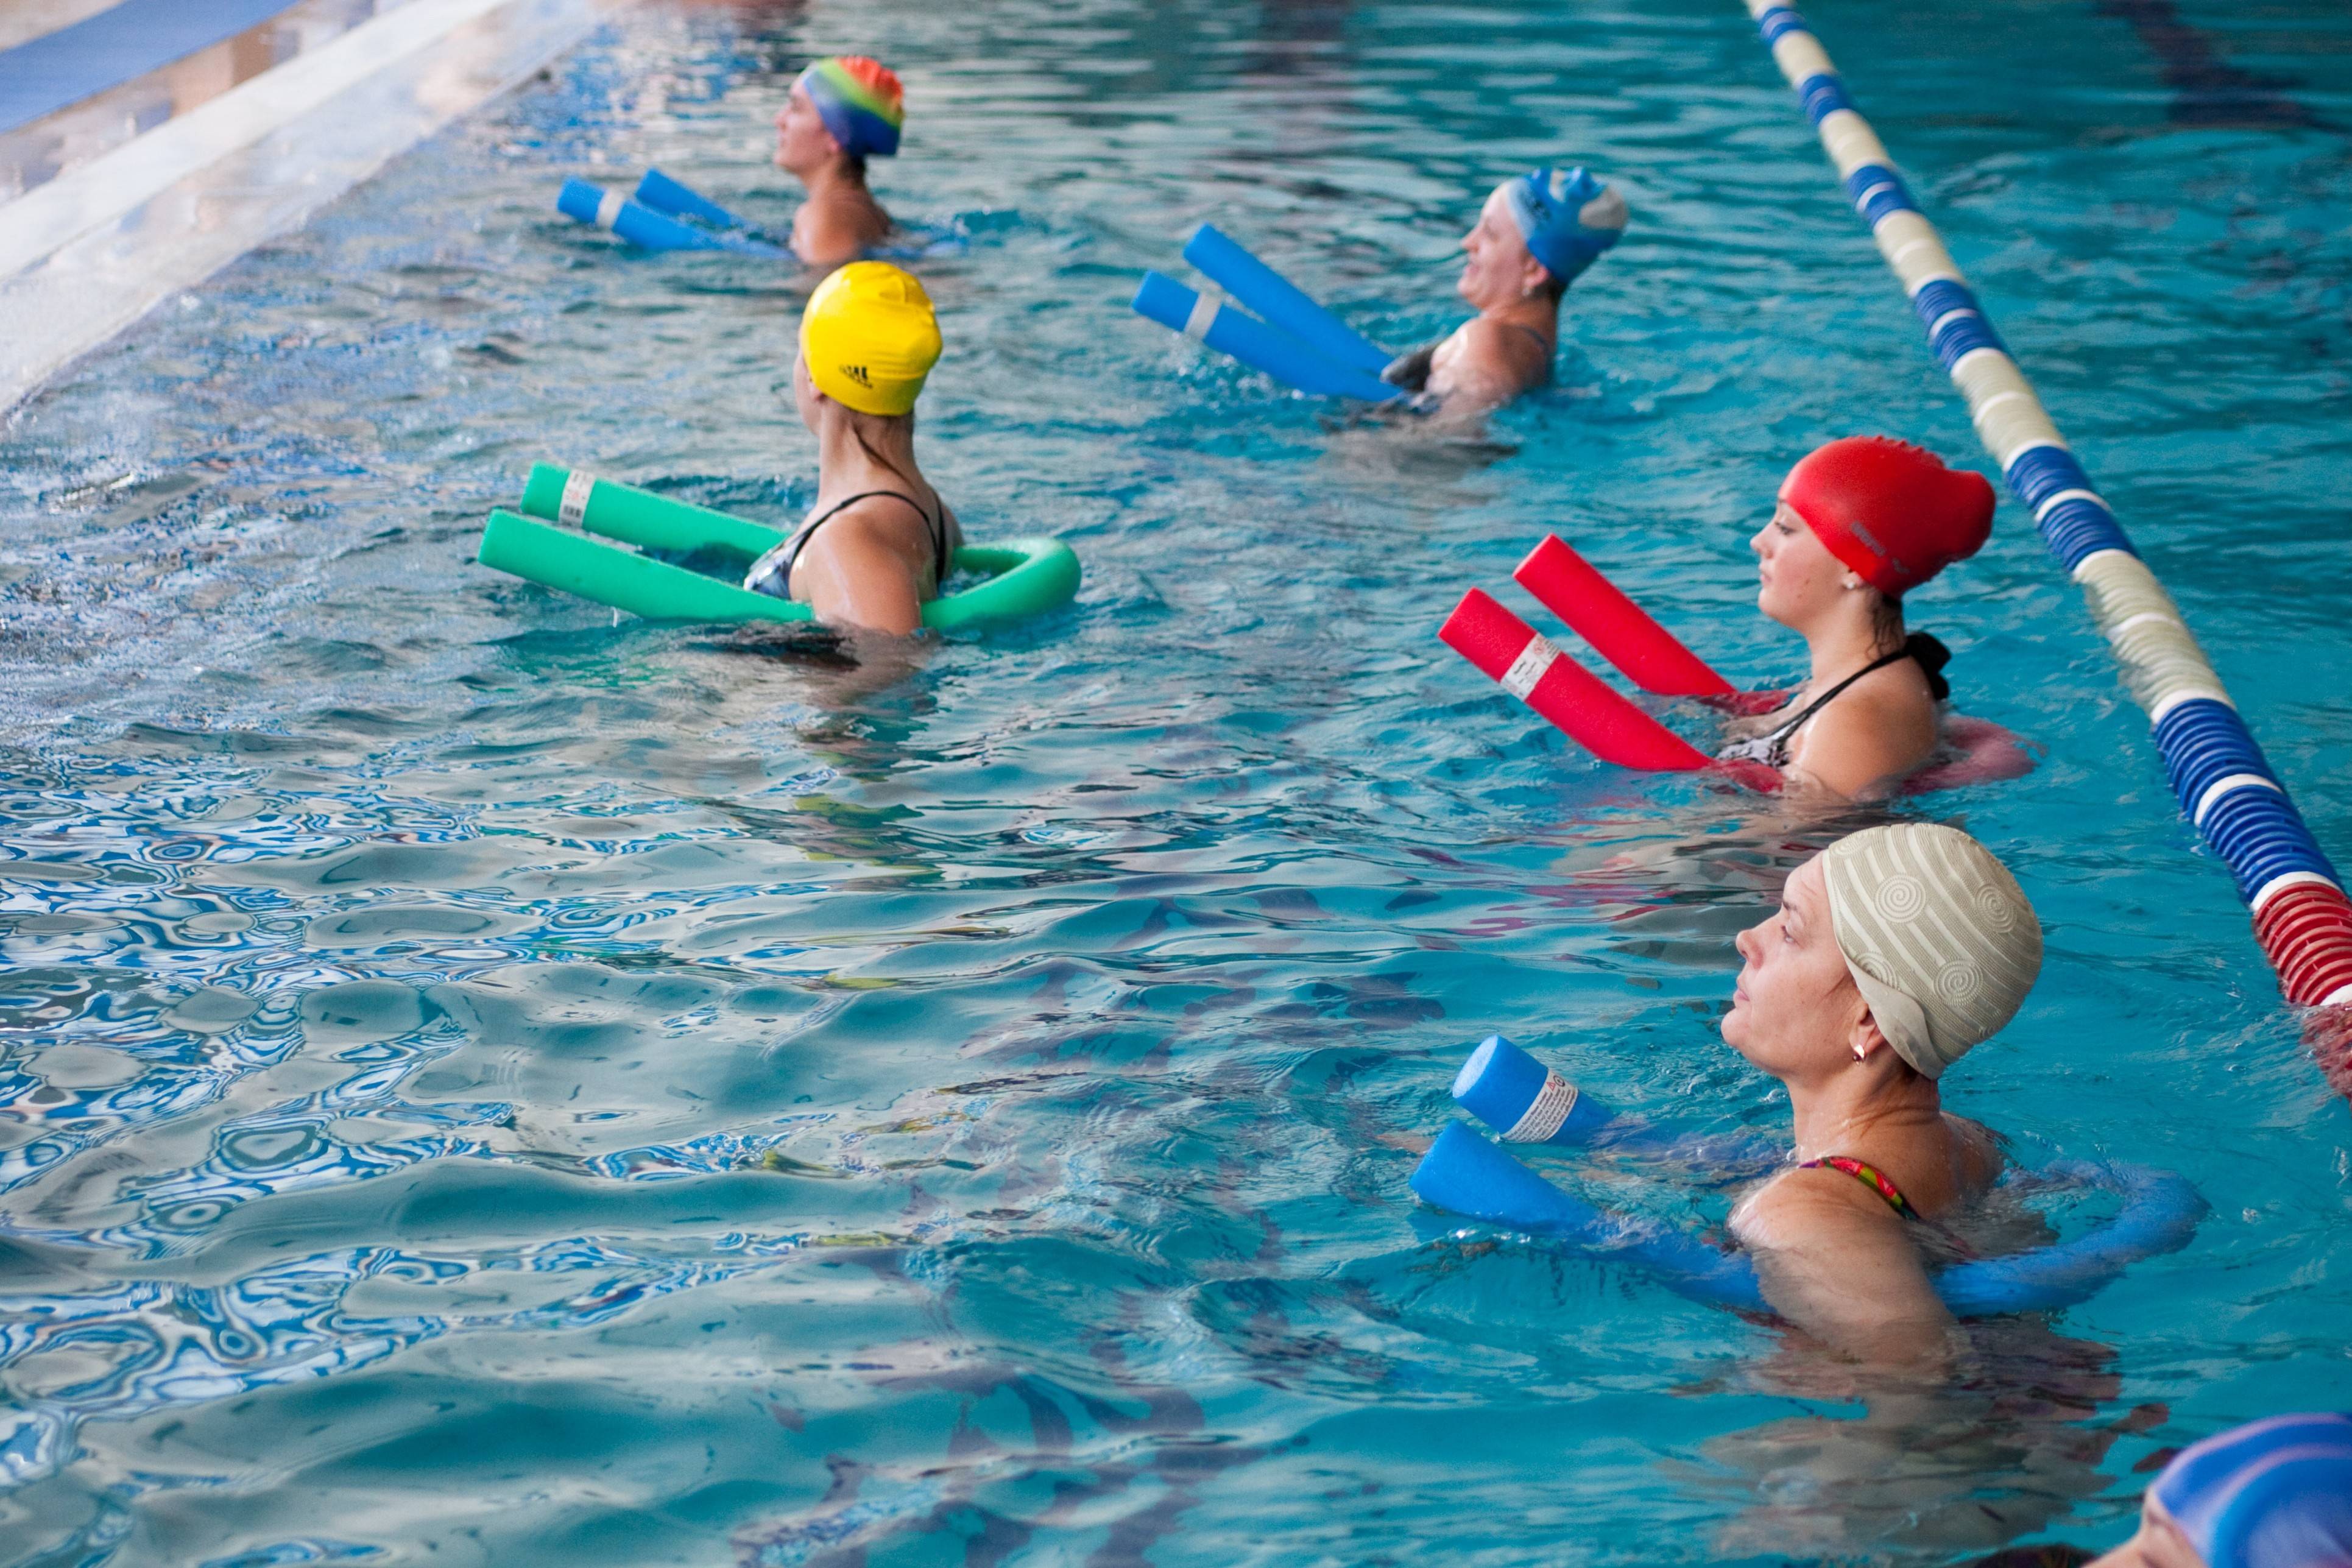 Занятия аквааэробикой в бассейне: упражнения на разные группы мышц для начинающих, советы и противопоказания